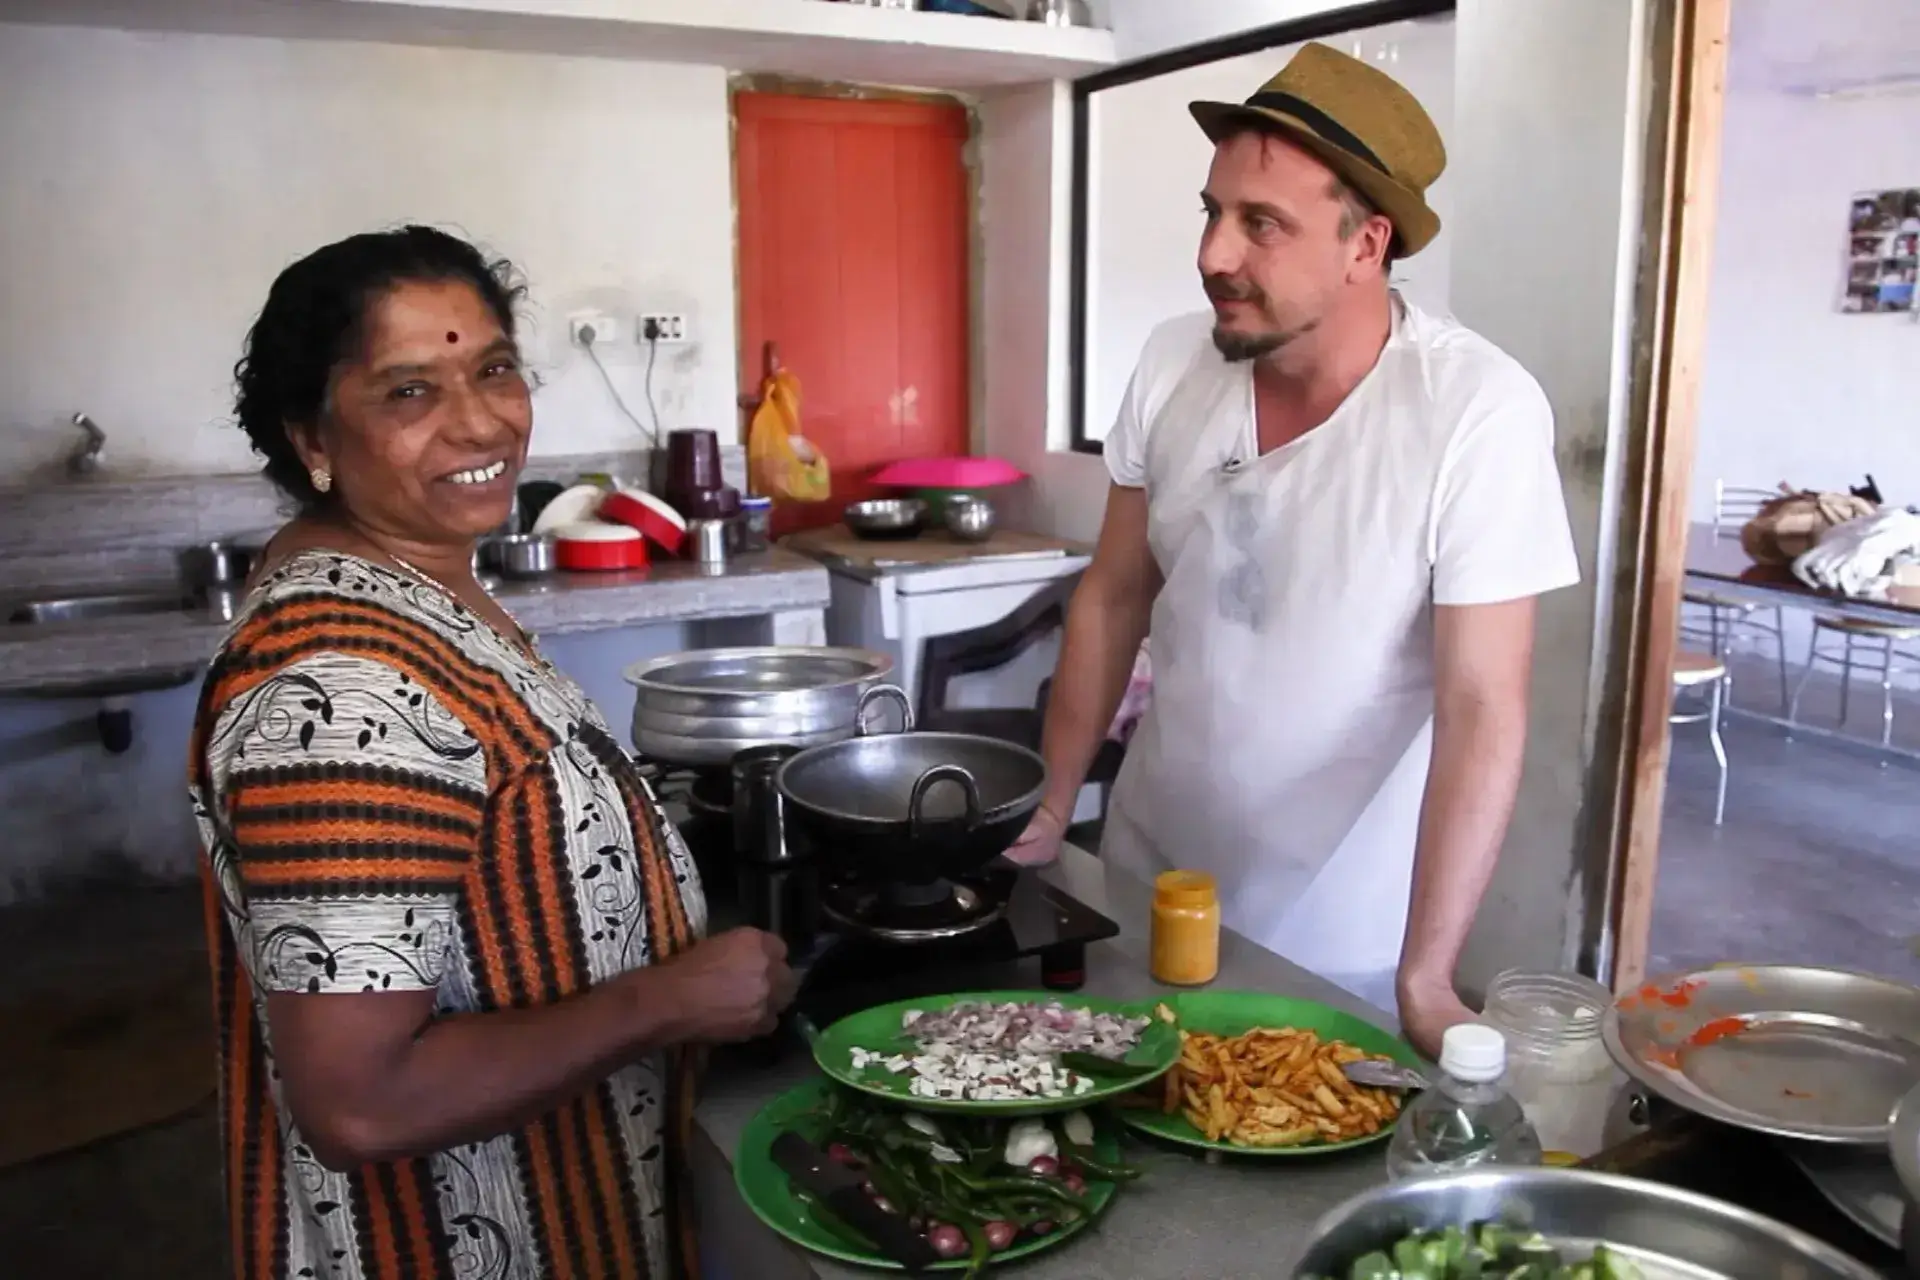 Mujer india y hombre blanco con sombrero conversan en torno a una mesa con comida